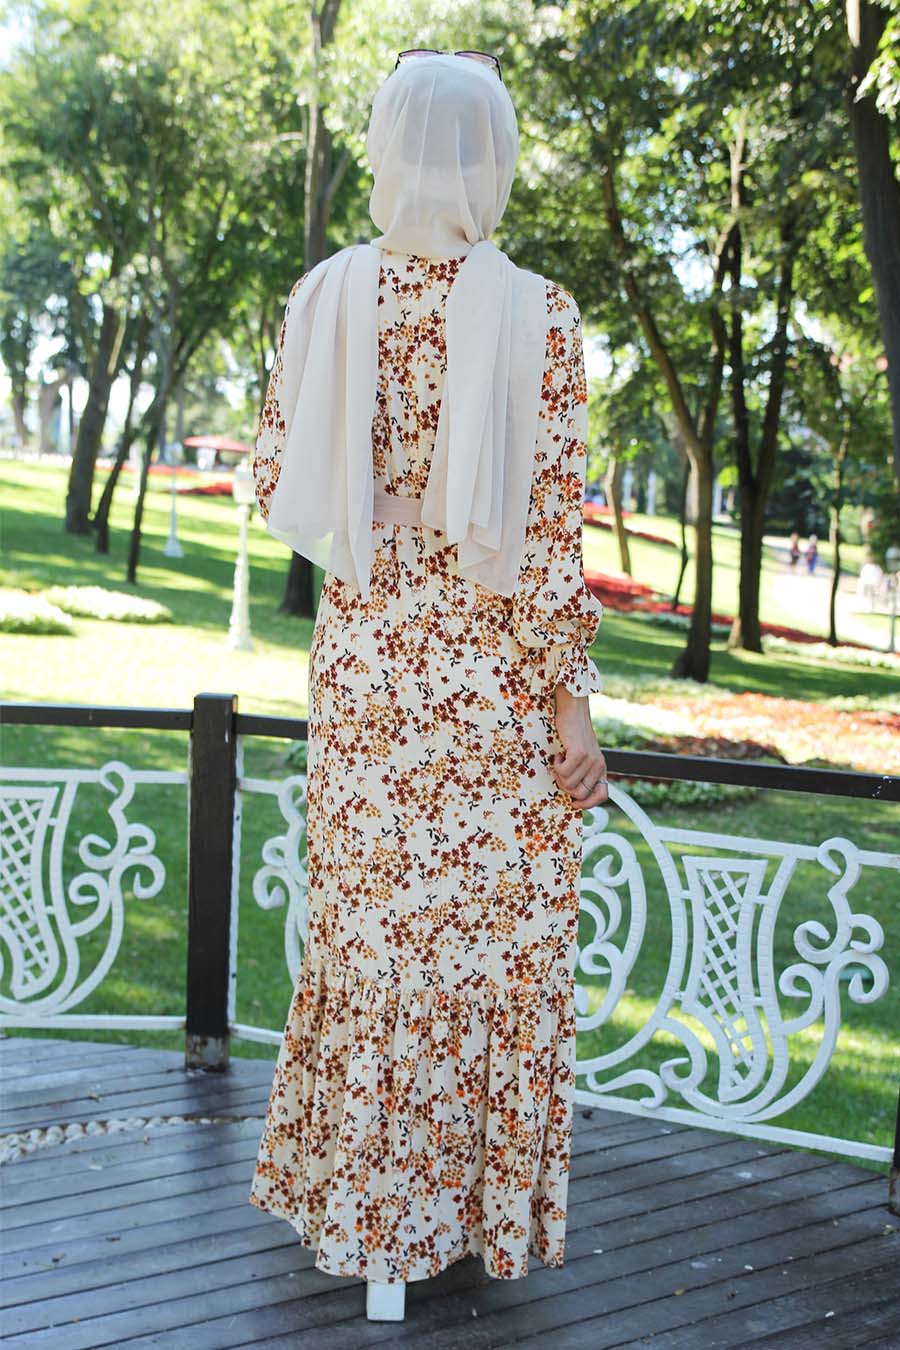 Etek Ucu Fırfırlı Çiçek Desenli Tesettür Elbise - Krem